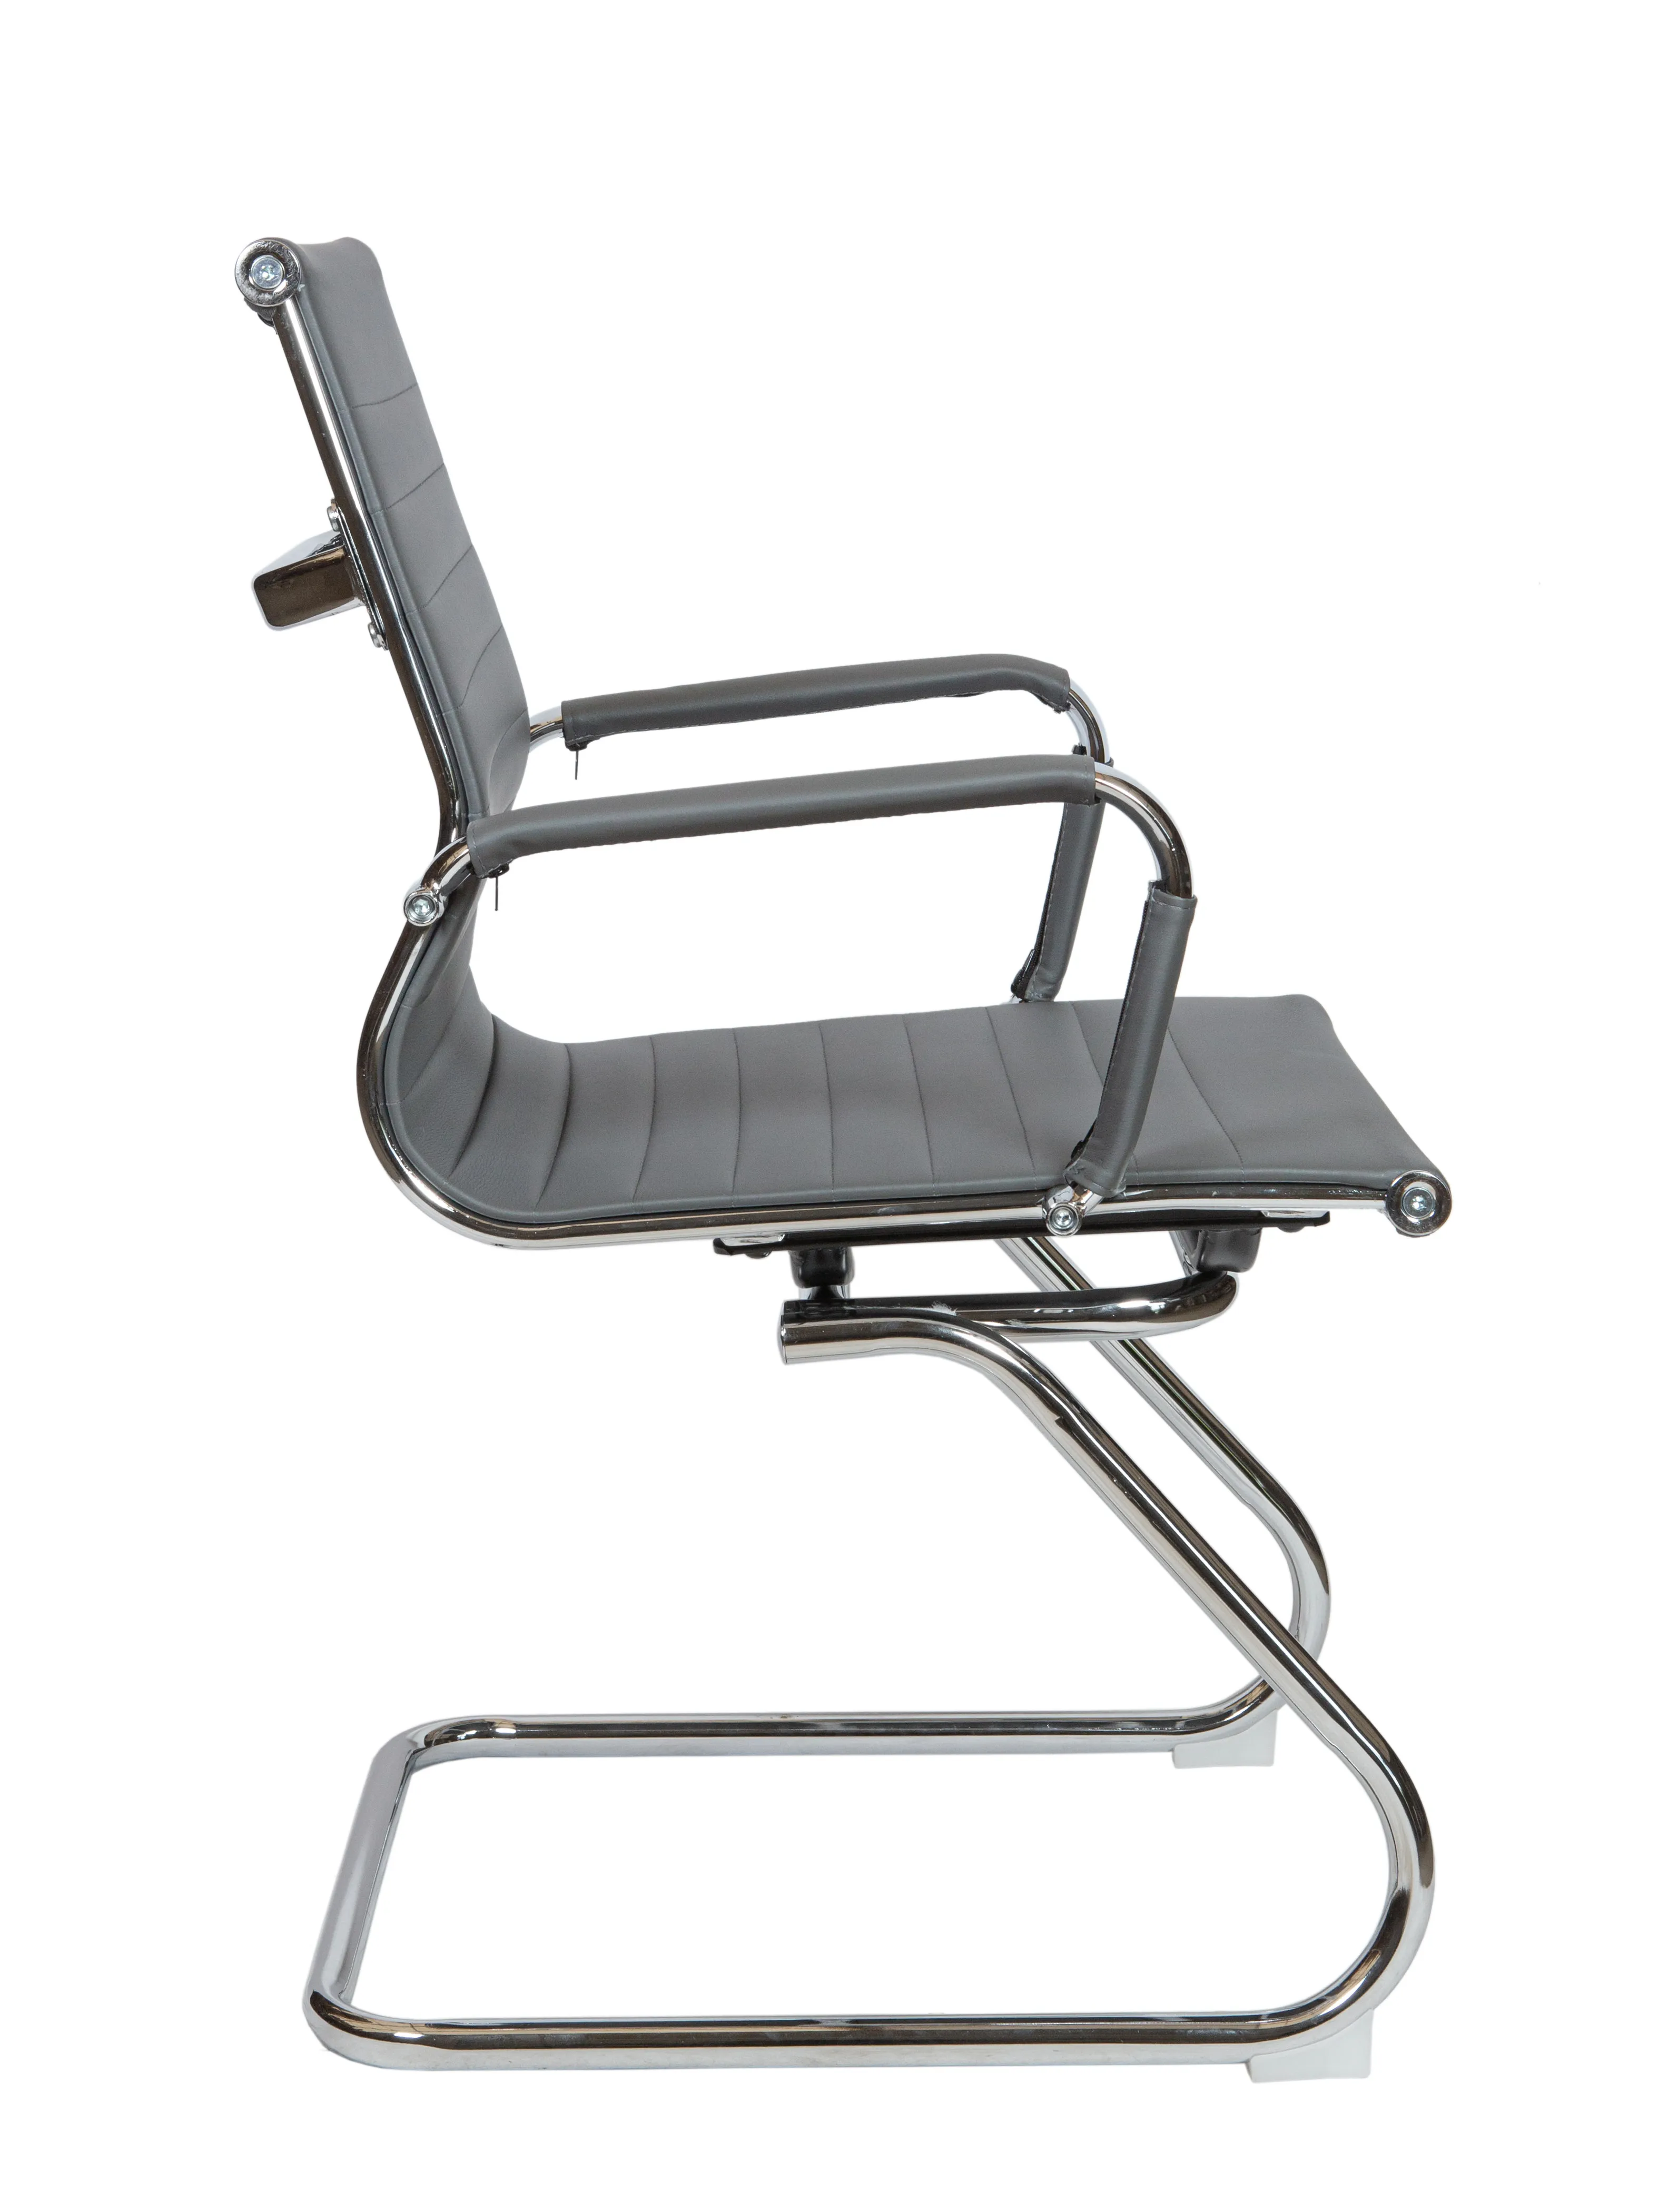 Кресло офисное NORDEN Техно CF хром экокожа серый HB-100-45